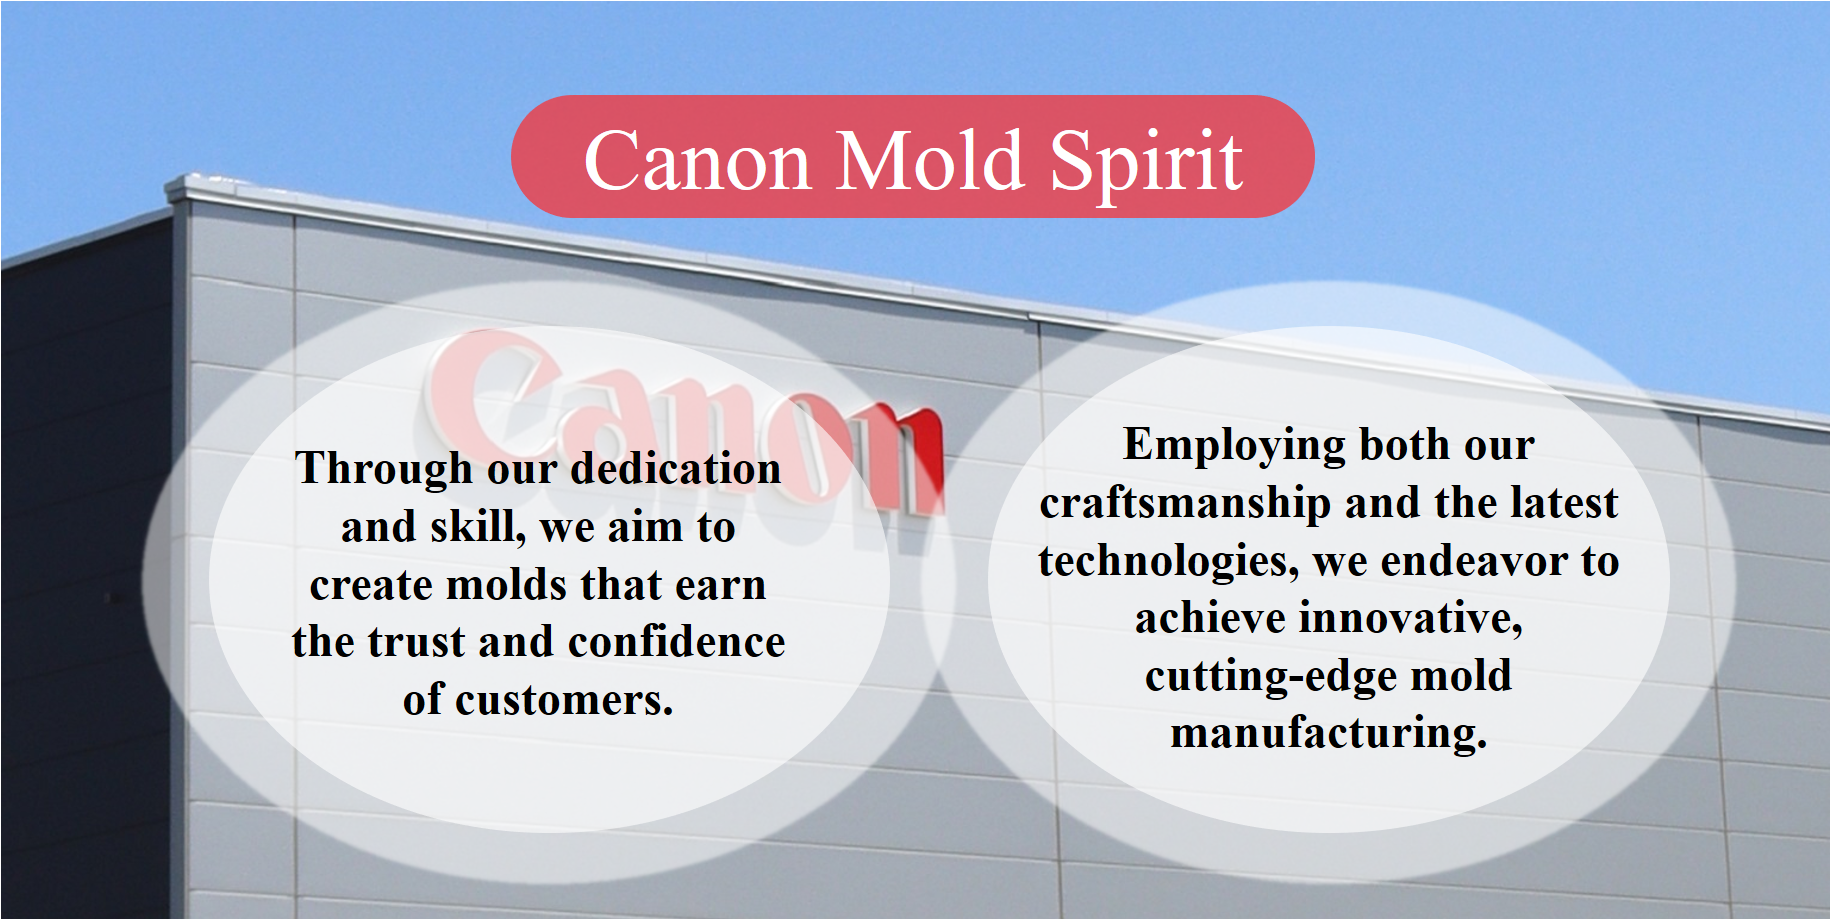 Canon Mold Spirit